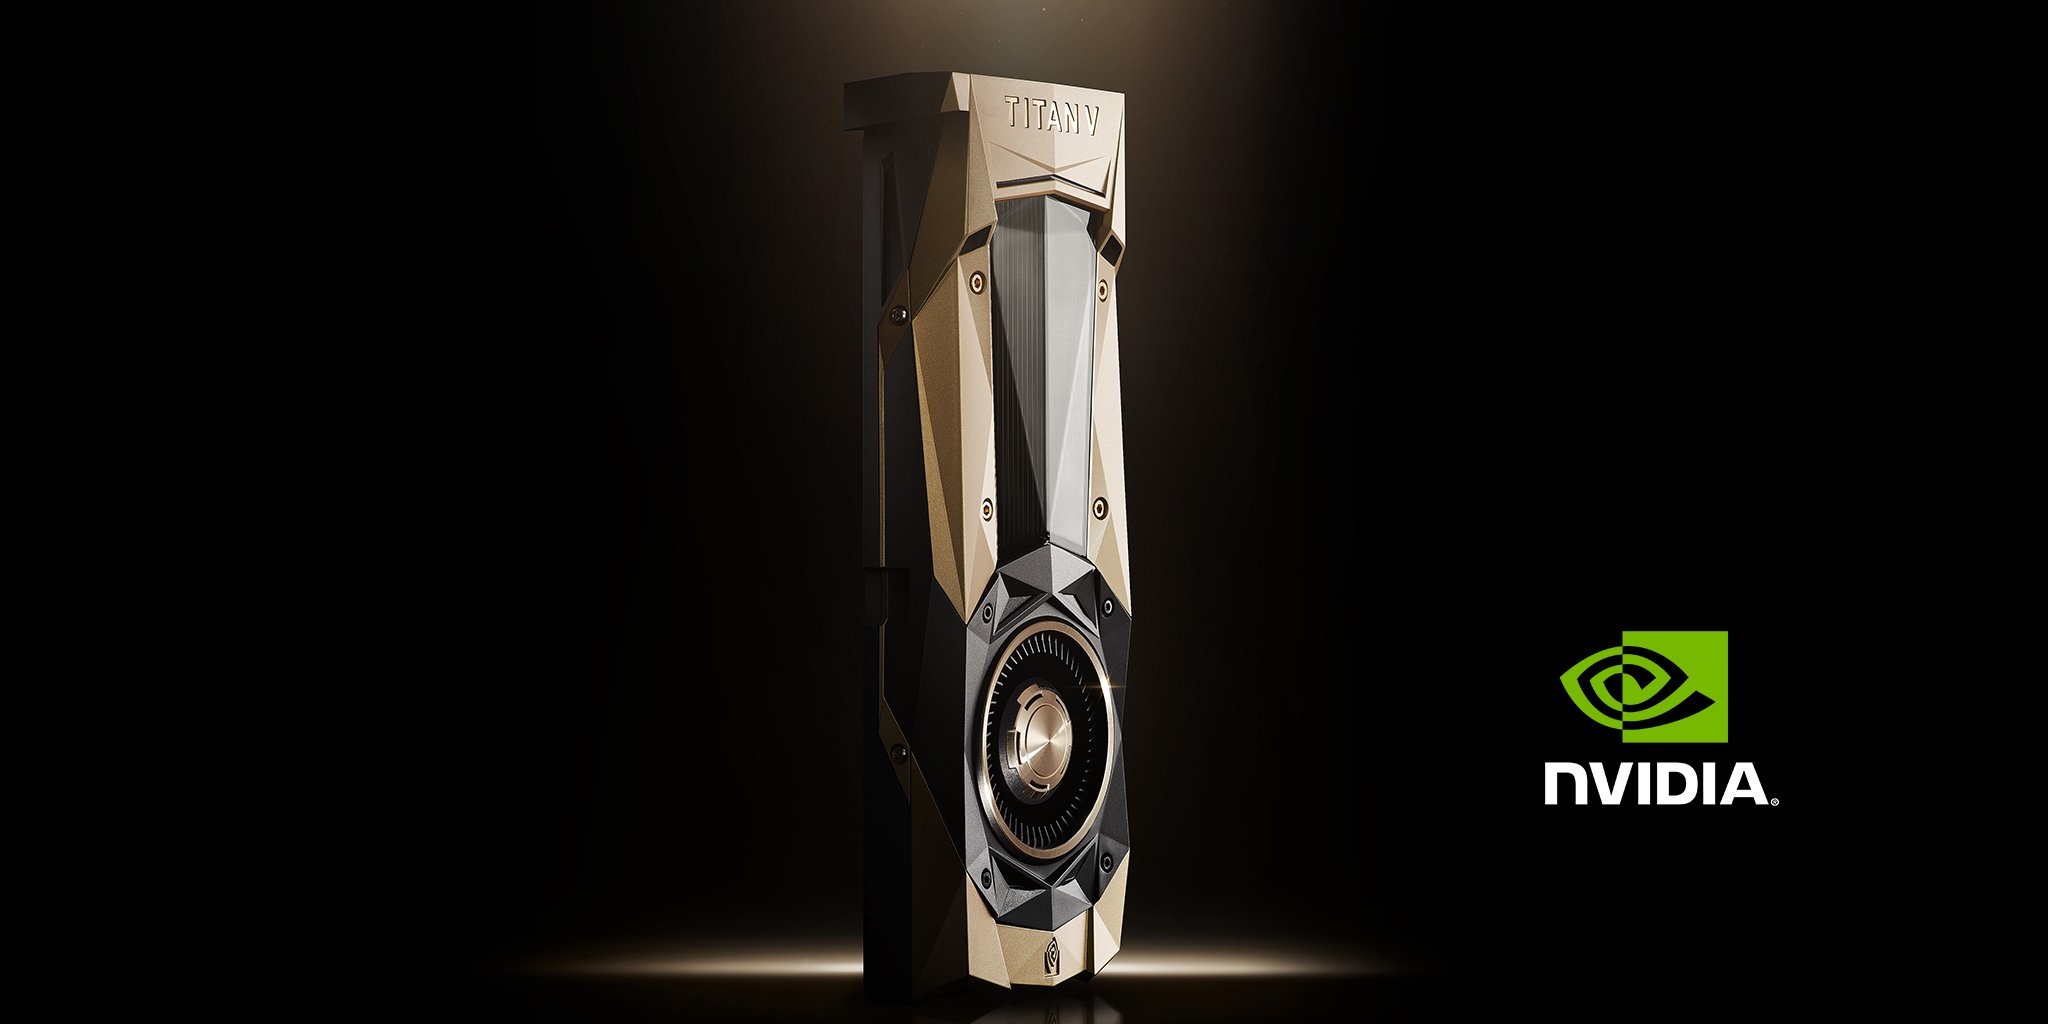 Nvidia’s GeForce GTX 1180 nhiều khả năng sẽ được giới thiệu sớm vào tháng 7 năm nay